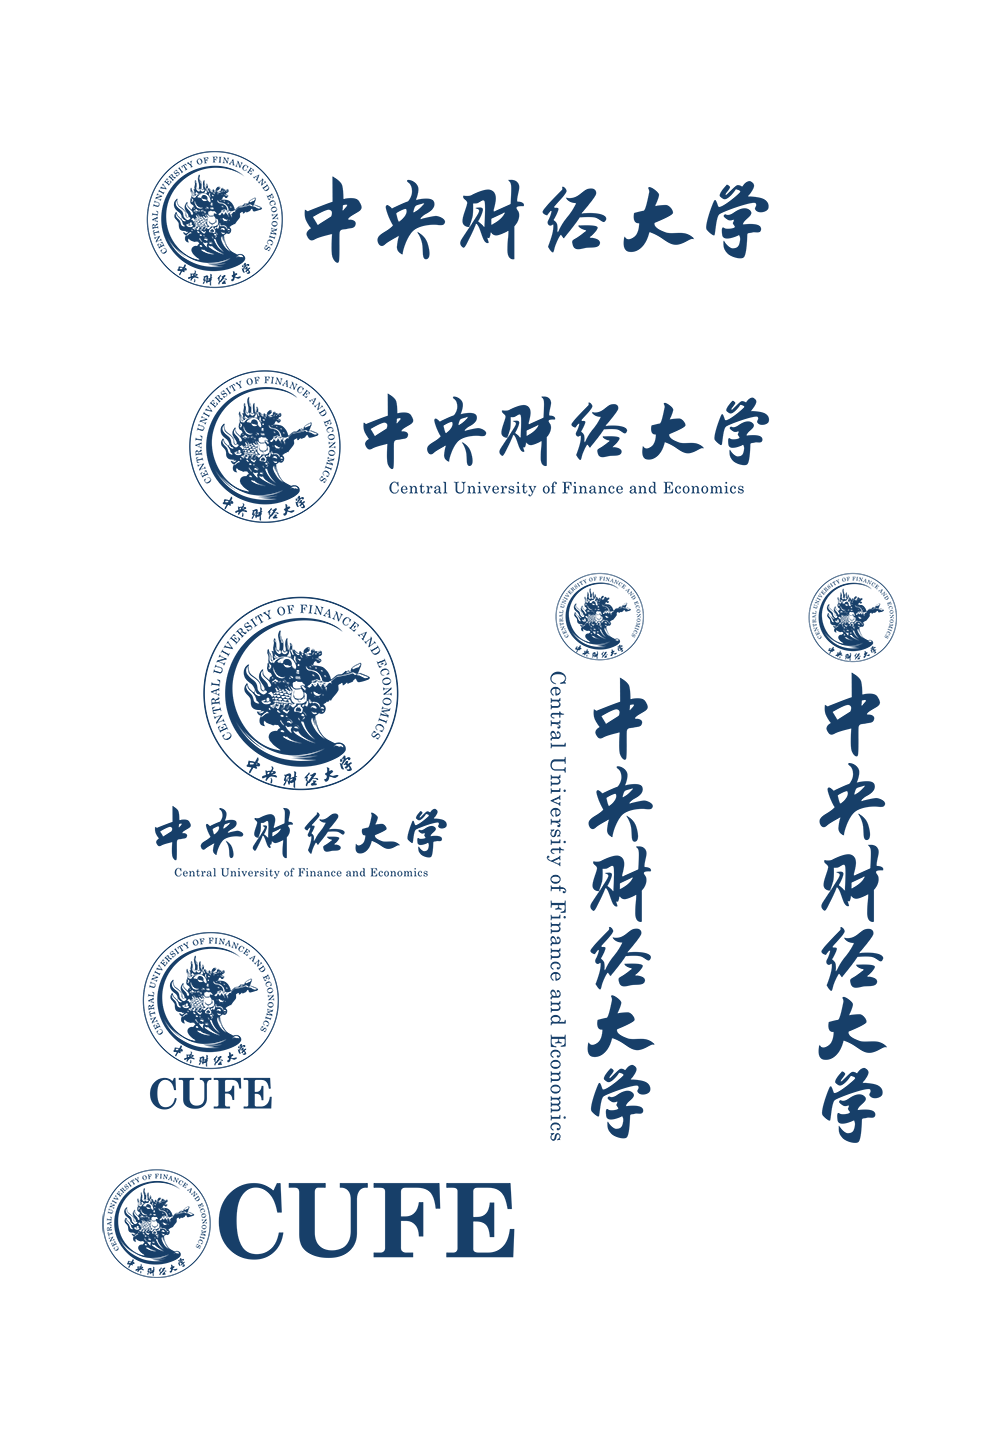 中央财经大学校徽logo矢量标志素材